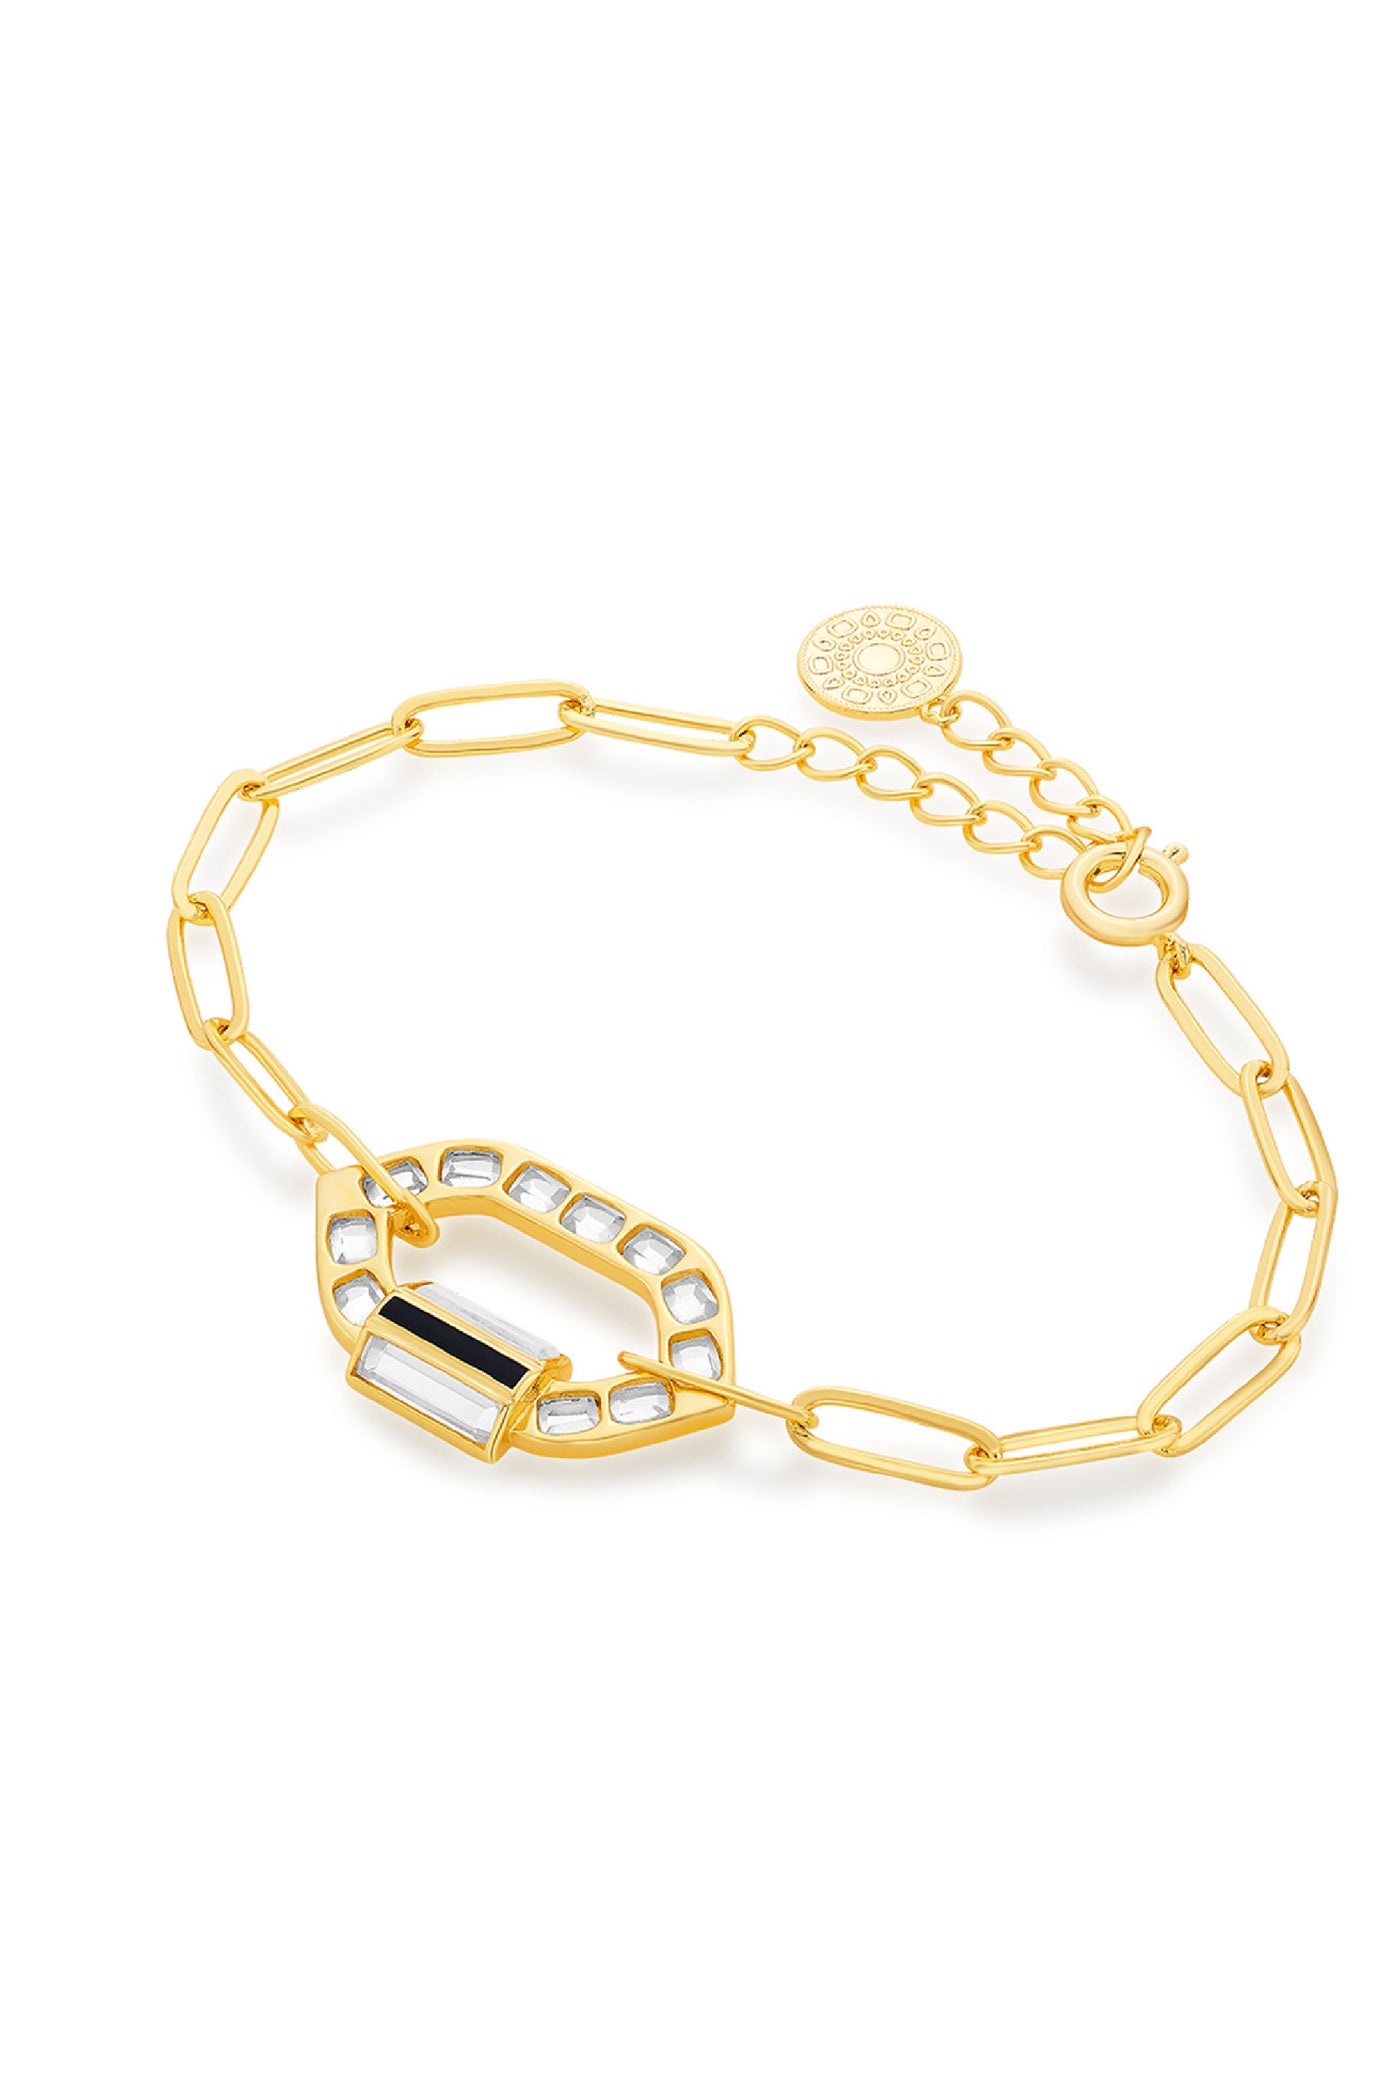 Isharya Sliving Link Bracelet In 18kt Gold Plated jewellery indian designer wear online shopping melange singapore